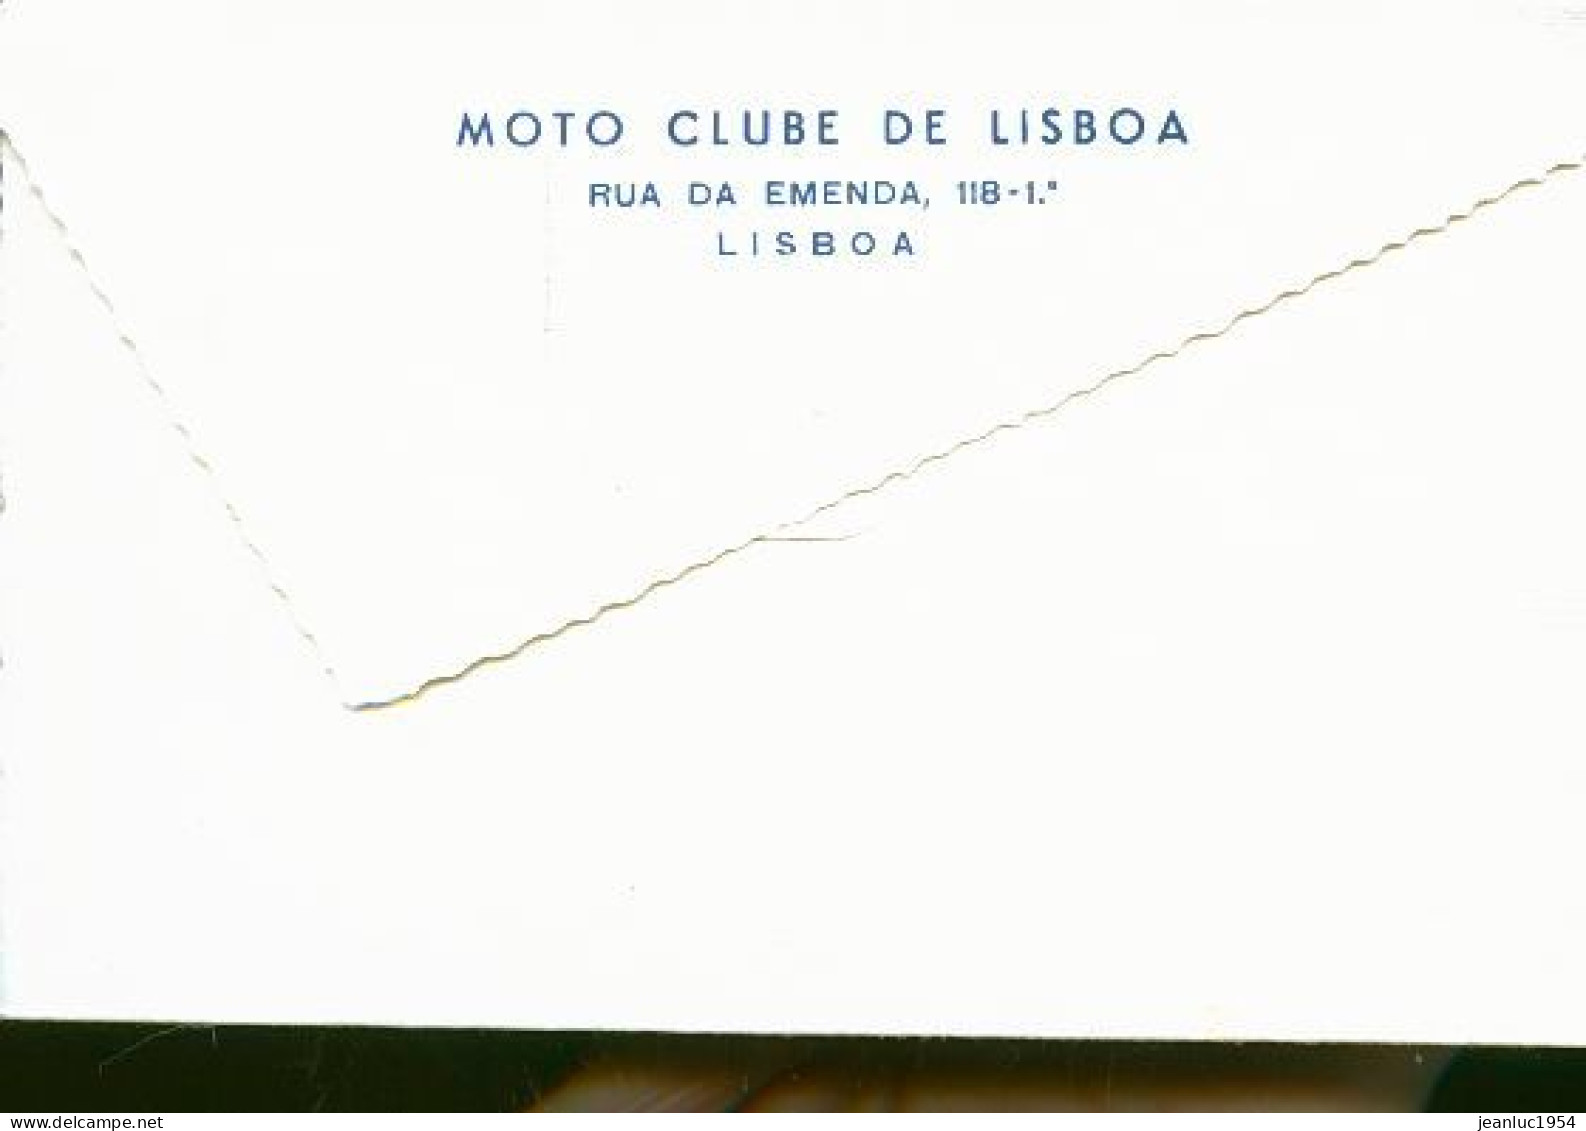 MOTO CLUBE DE LISBOA - Motos